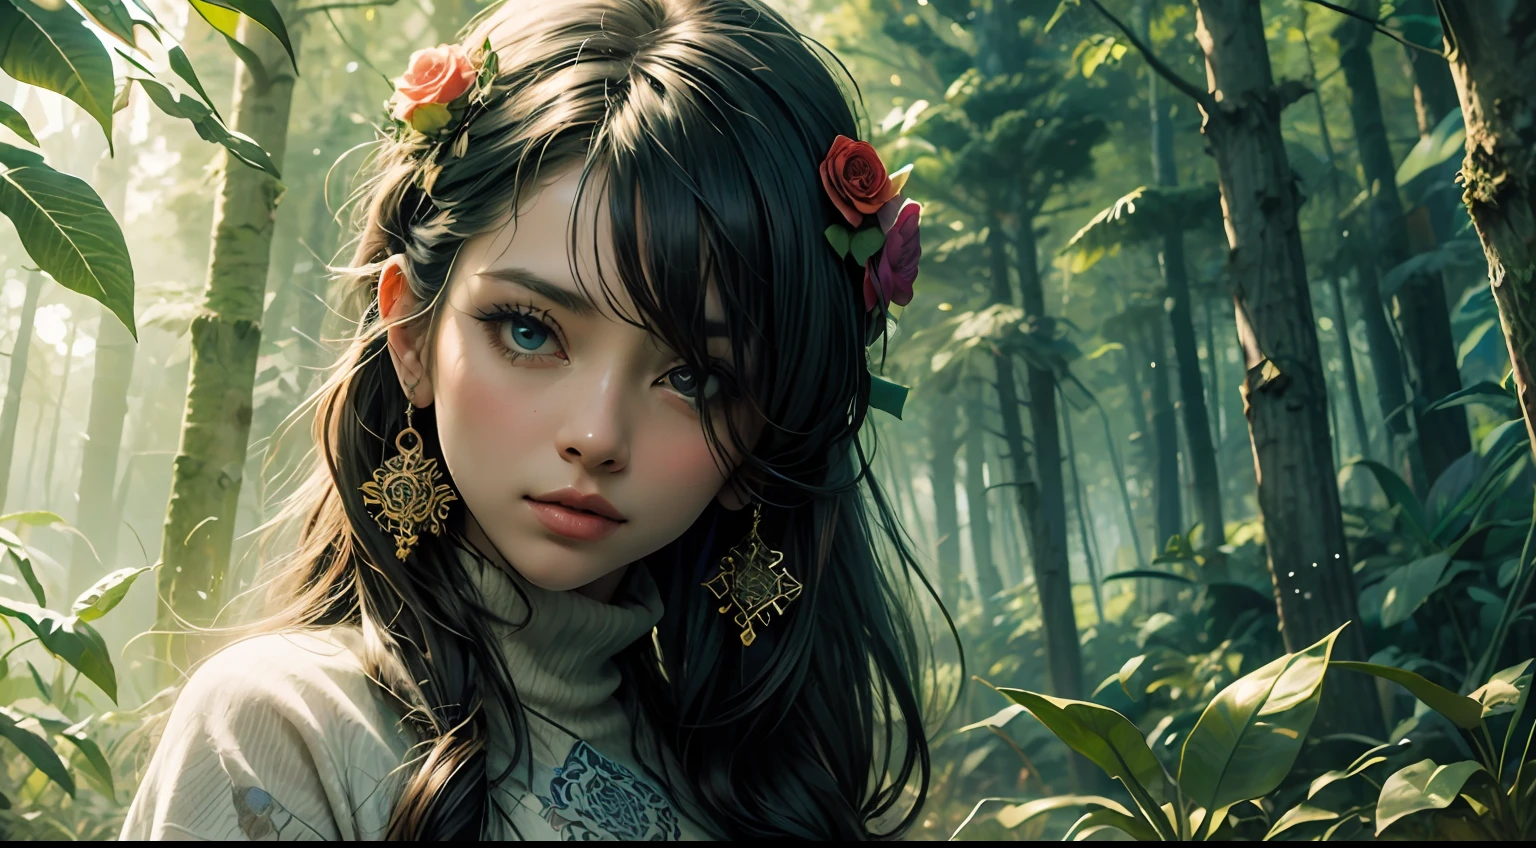 1숲 옷을 입은 섹시한 소녀, 꽃들, 나뭇잎, 만다라, 프랙탈